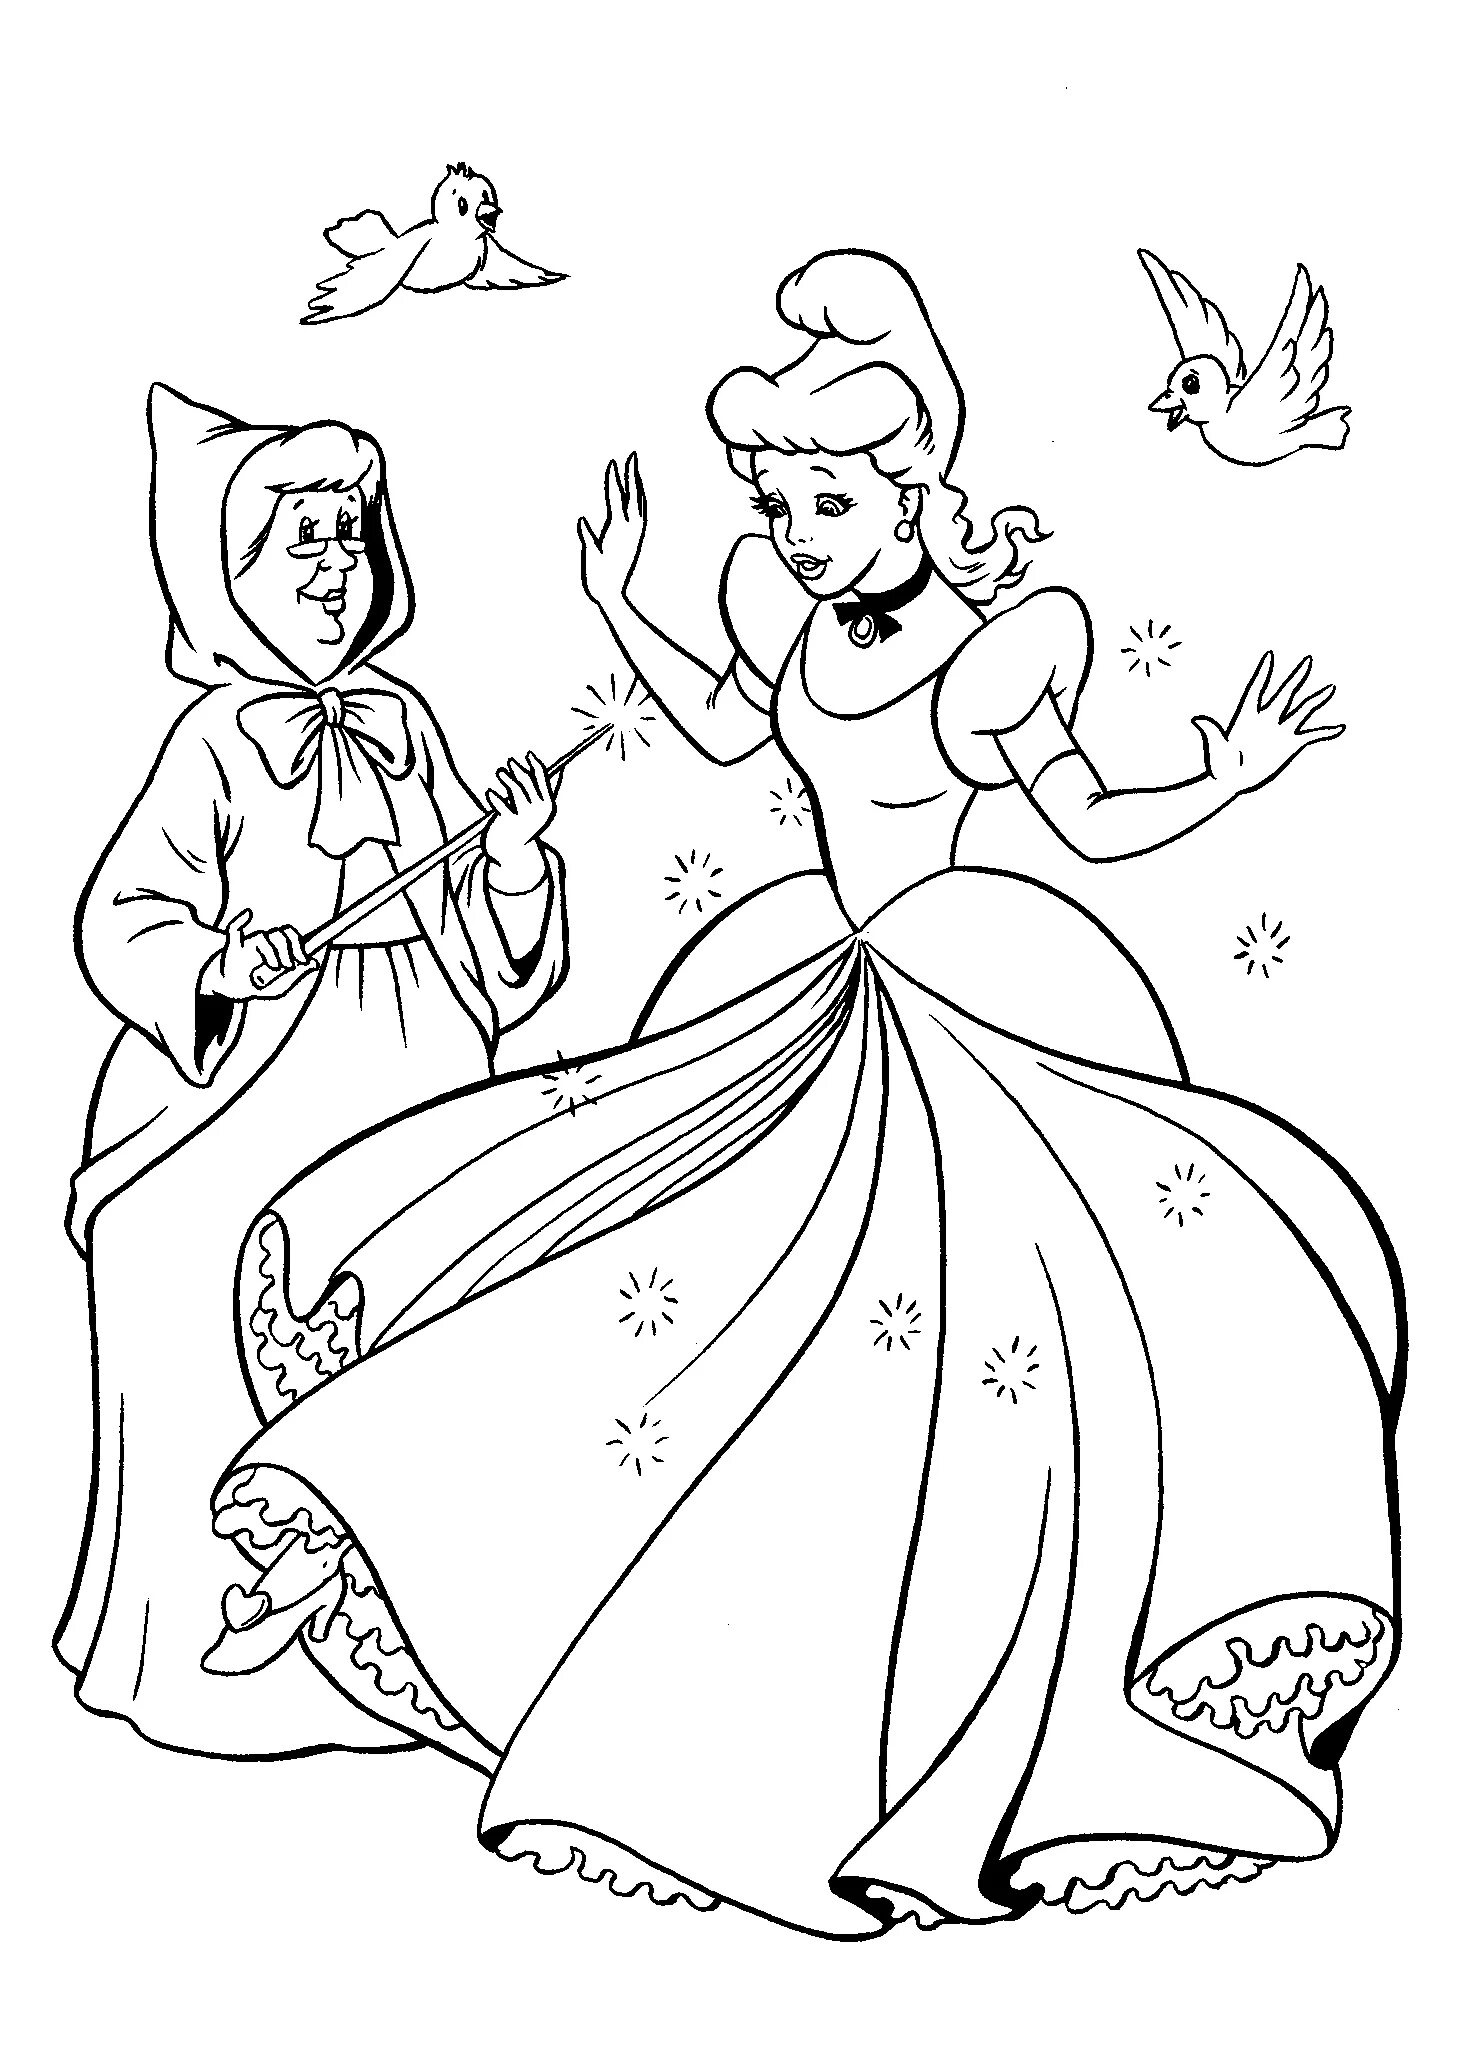 Great Cinderella coloring book for preschoolers